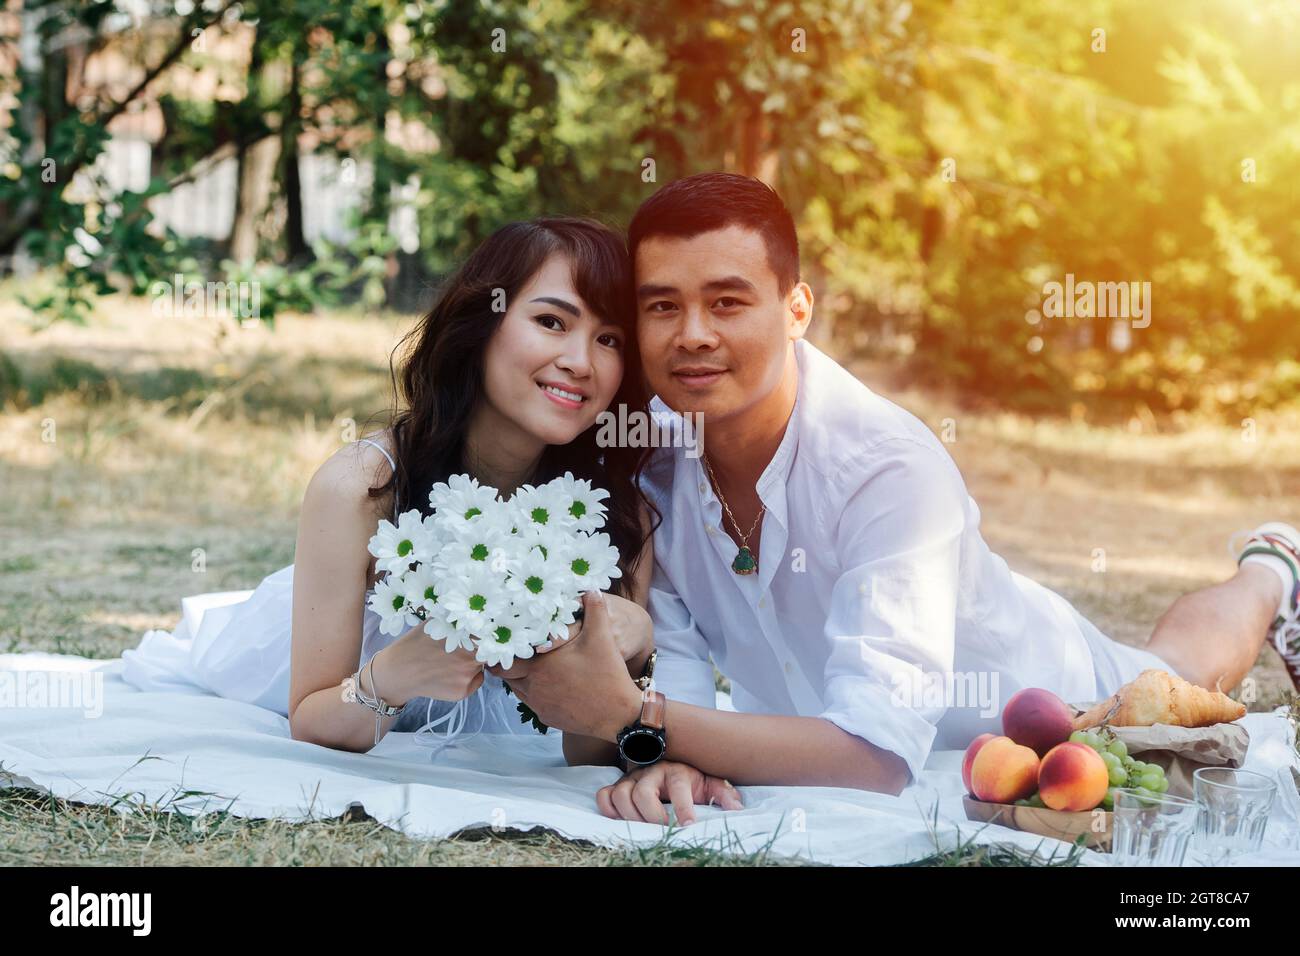 Un couple asiatique charmant s'est happé pique-niquer dans un parc, allongé sur leurs estomacs. Femme tenant un bouquet, se reposant dans des vêtements blancs dans une ombre d'arbre. Banque D'Images